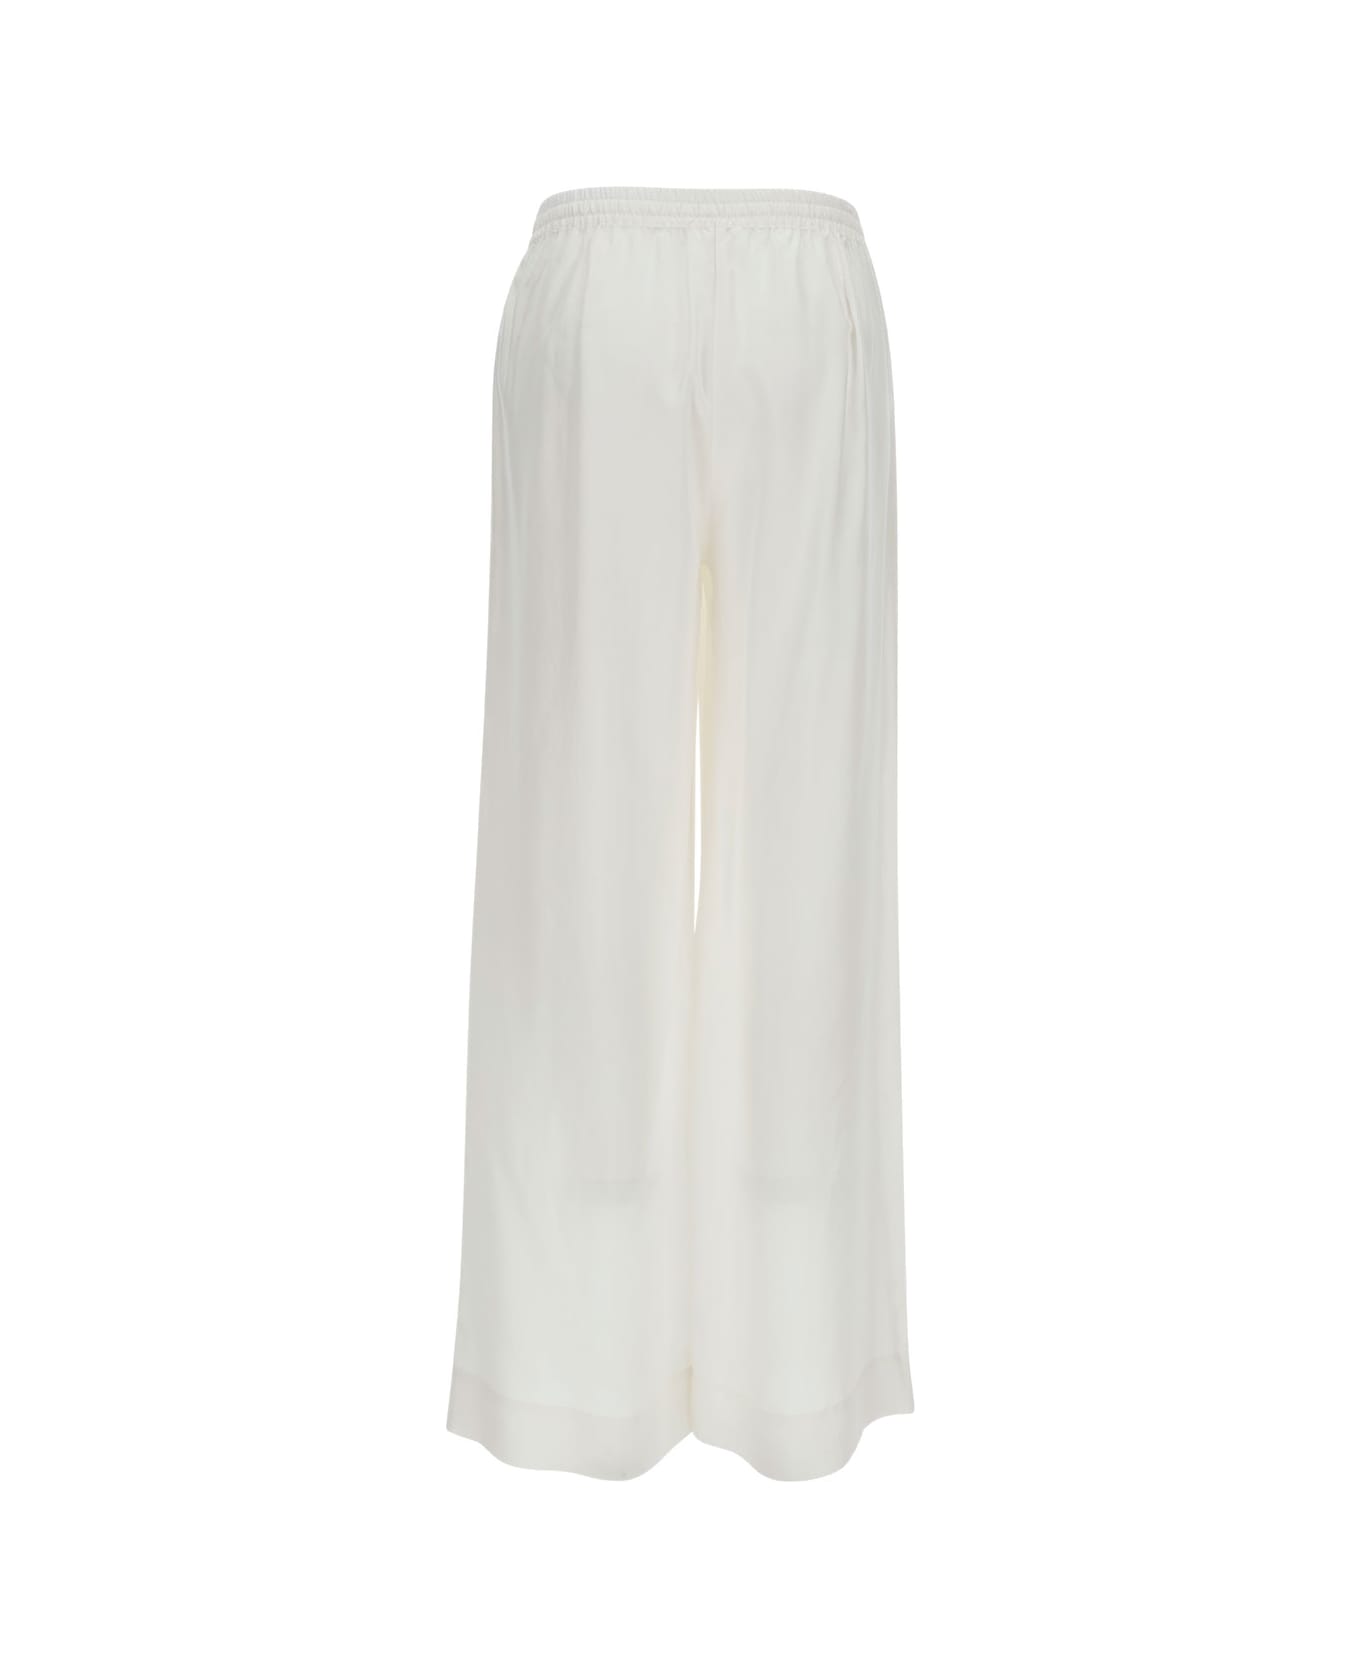 Parosh White Loose Pants With Drawstring In Silk Woman - White